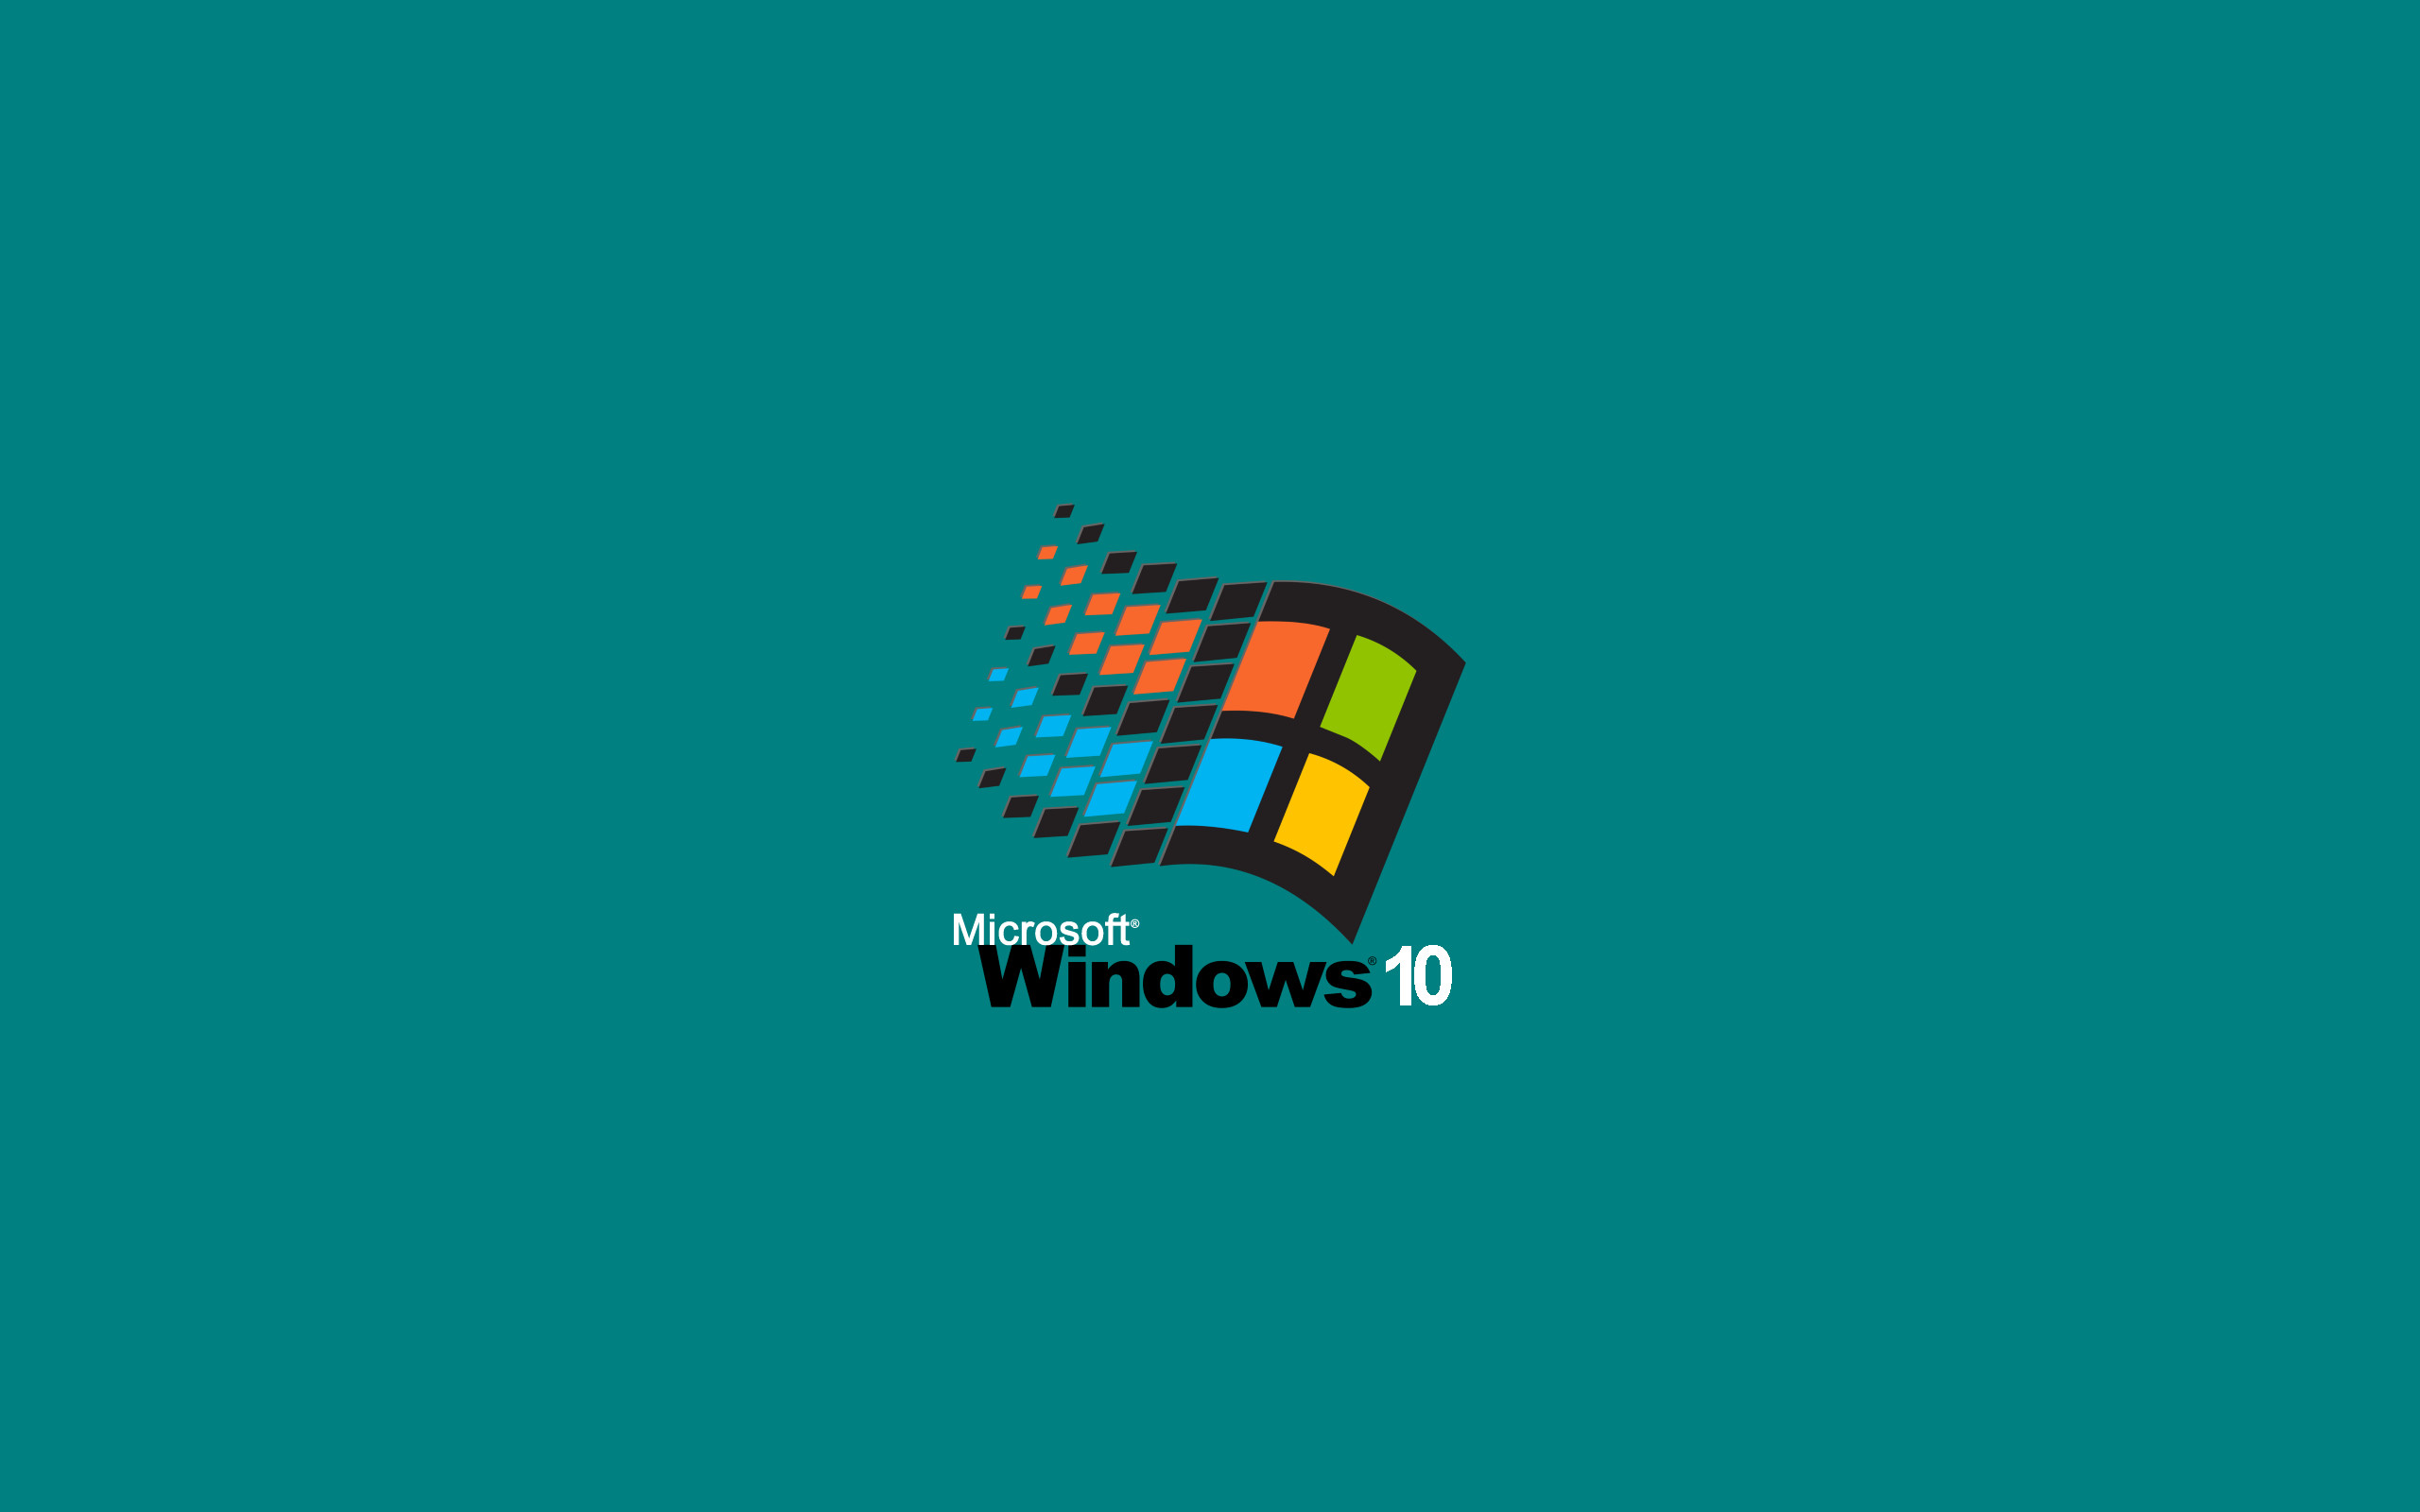 Hình nền desktop Windows 95: Hình nền desktop Windows 95 mang đến cho bạn không gian làm việc hoàn hảo và tuyệt đẹp mỗi khi sử dụng máy tính. Với những hình ảnh độc đáo và đẹp mắt, bạn sẽ có trải nghiệm làm việc đầy cảm hứng và thư giãn. Hãy tải và sử dụng ngay hình nền desktop Windows 95 để trở thành người dùng đẳng cấp nhất.